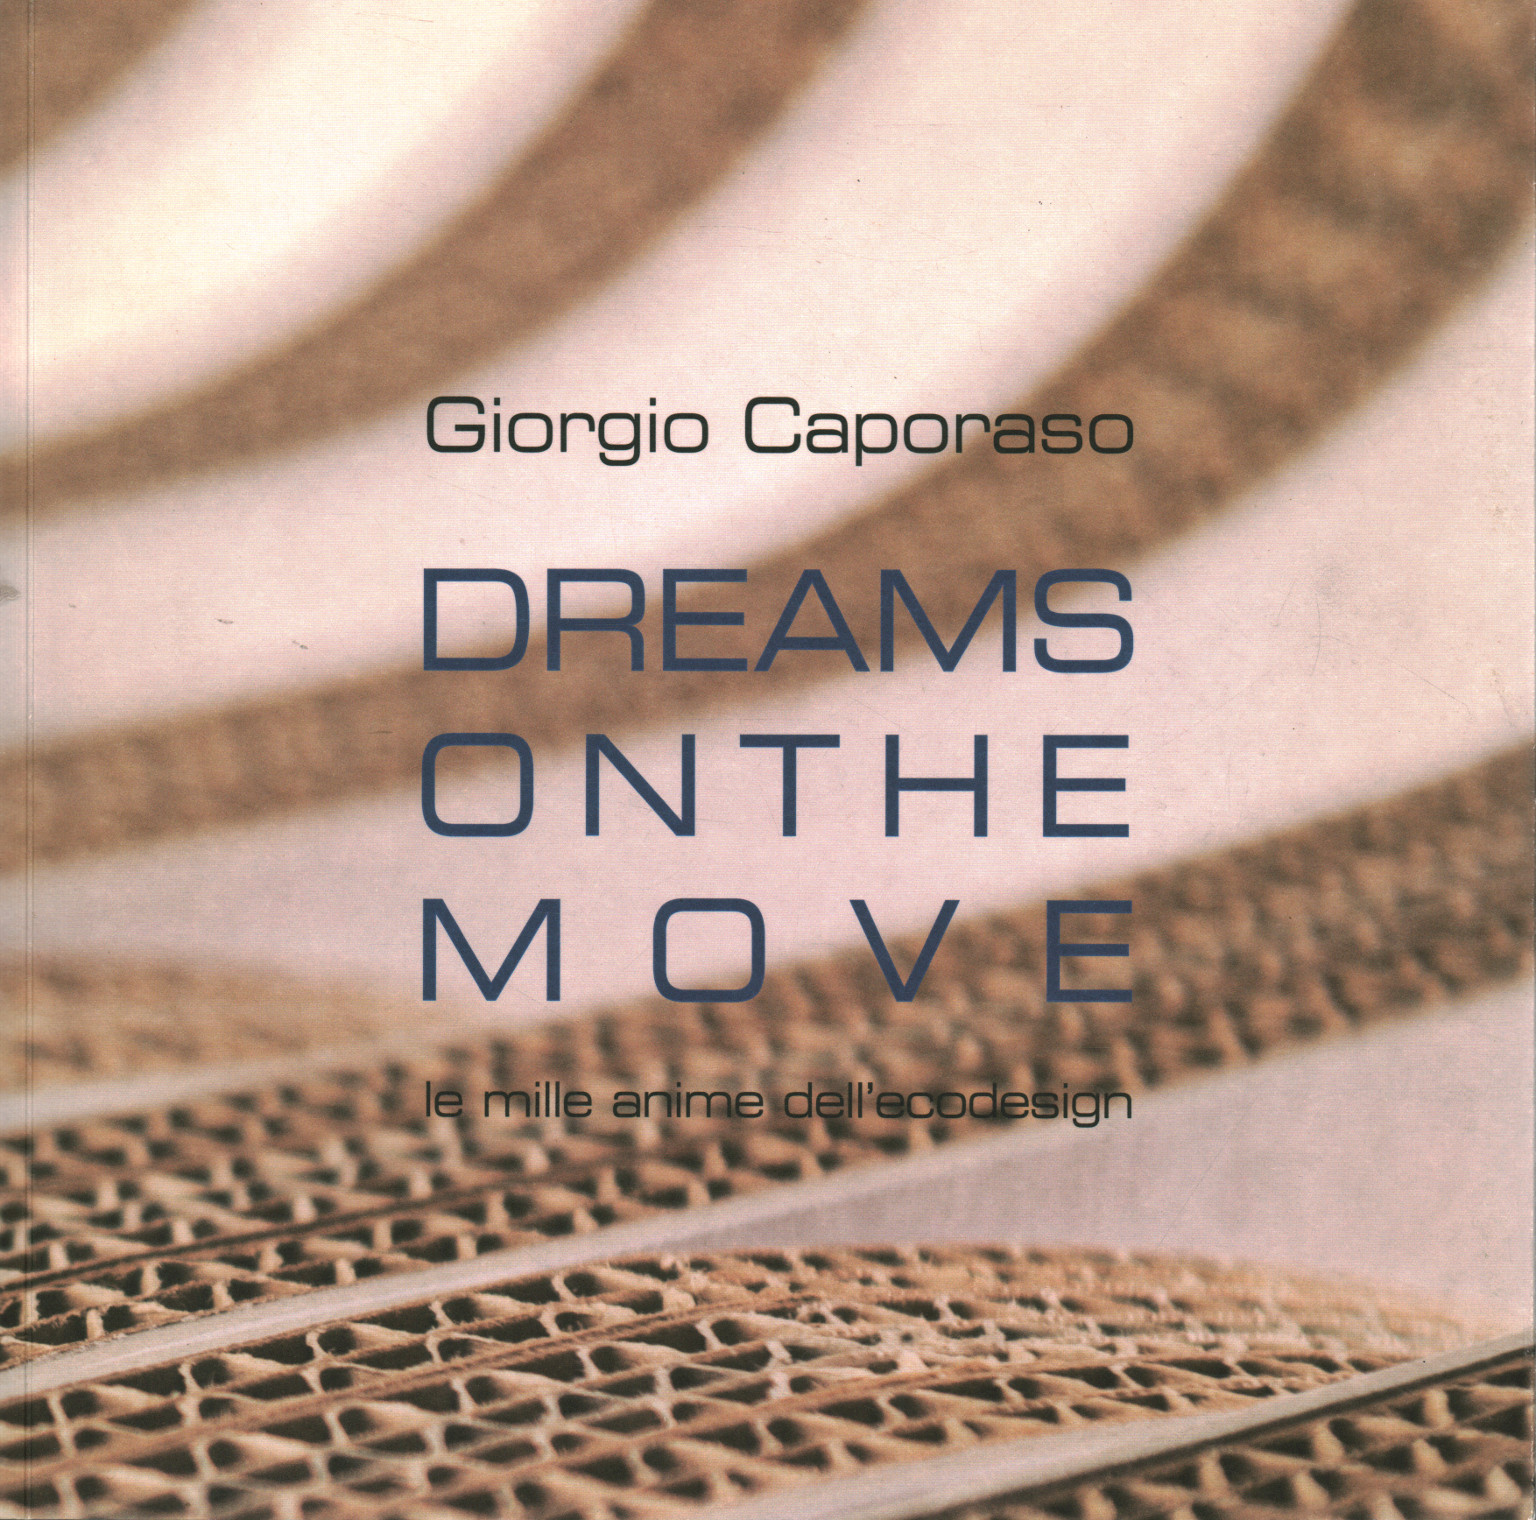 Dreams on the move. Le mille anime dell ecodesign, Giorgio Caporaso